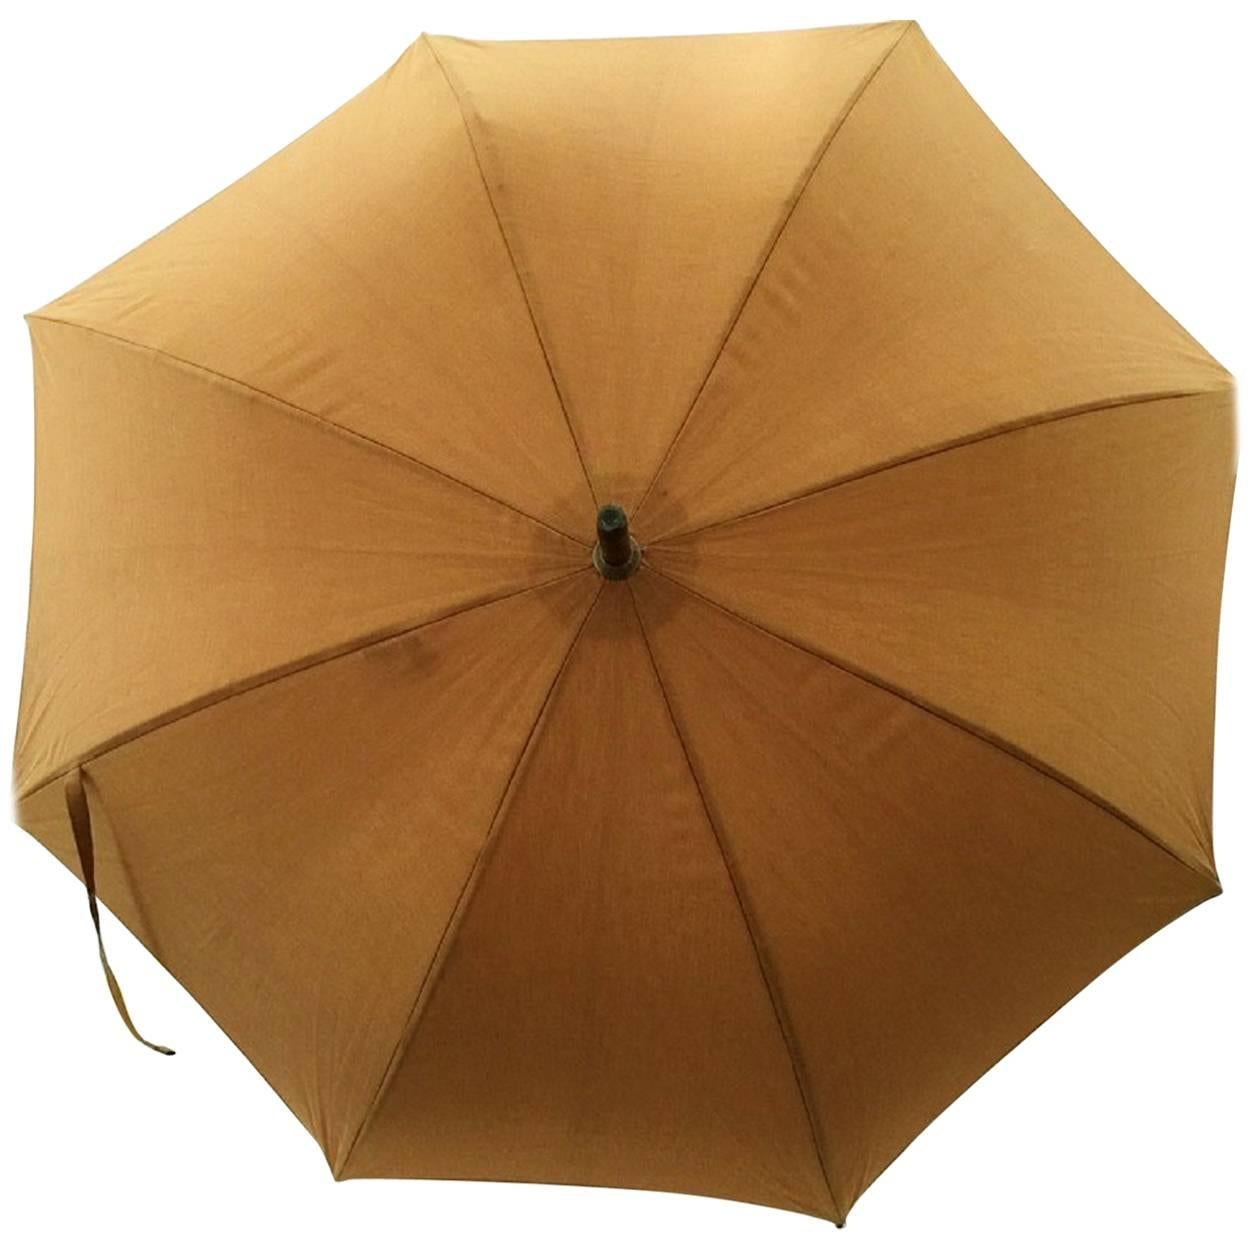 Hermes Paris Vintage Men’s Parasol Umbrella.  